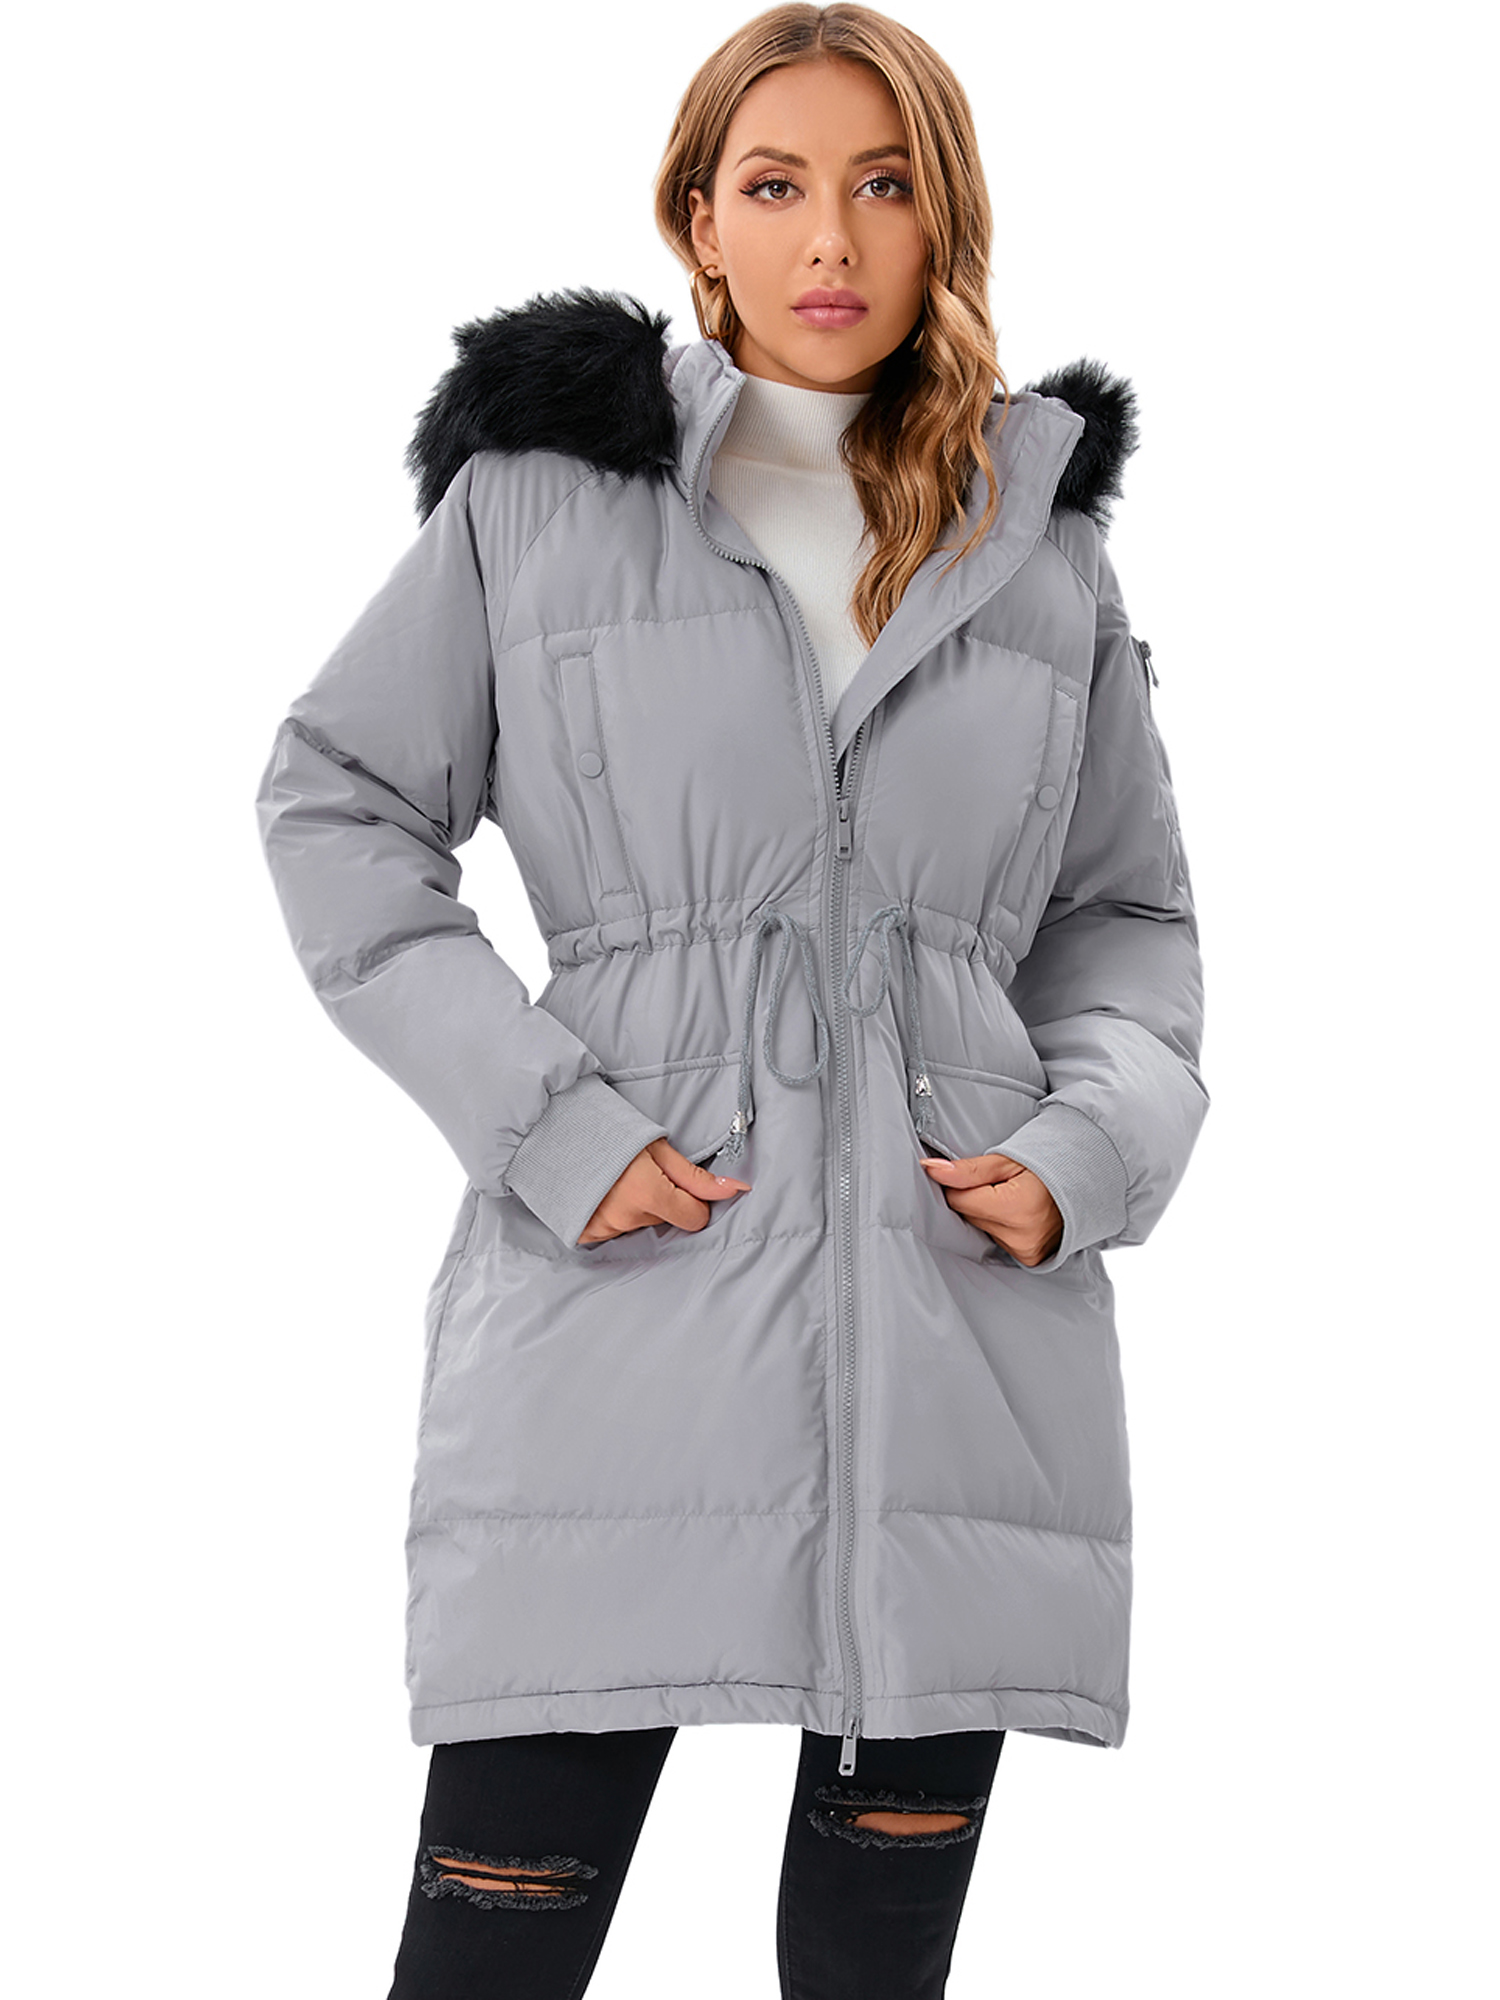 LELINTA Women's Winter Long Down Jacket Thickened Outwear Warm Puffer Fur Trim Hooded Coat Waterproof Rain Zip Parka, Black/ Camouflage - image 5 of 7